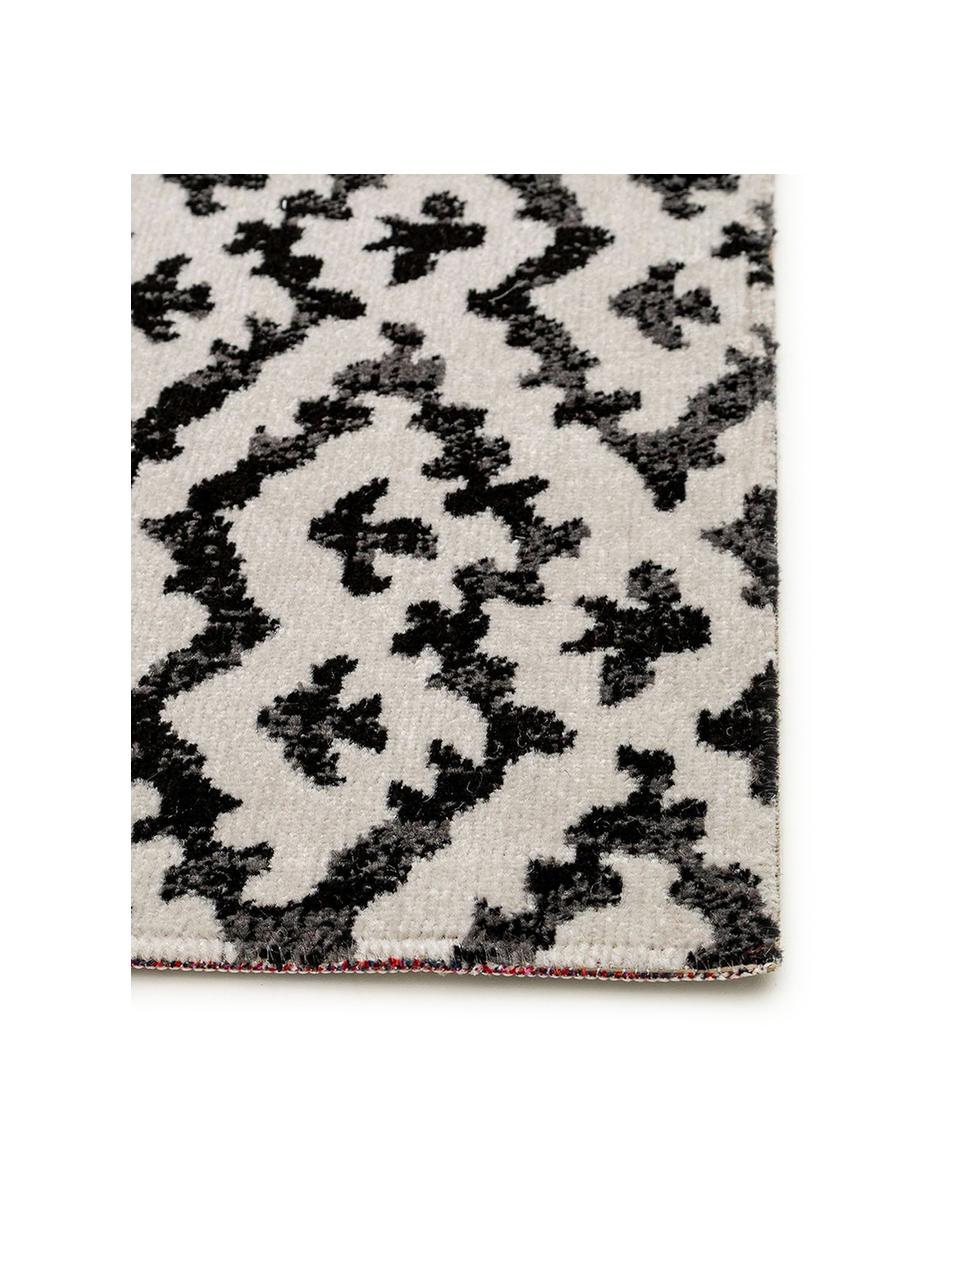 In- & Outdoor-Teppich Jerry im Ethno Look, 100% Polypropylen, Schwarz, Weiß, B 160 x L 230 cm (Größe M)